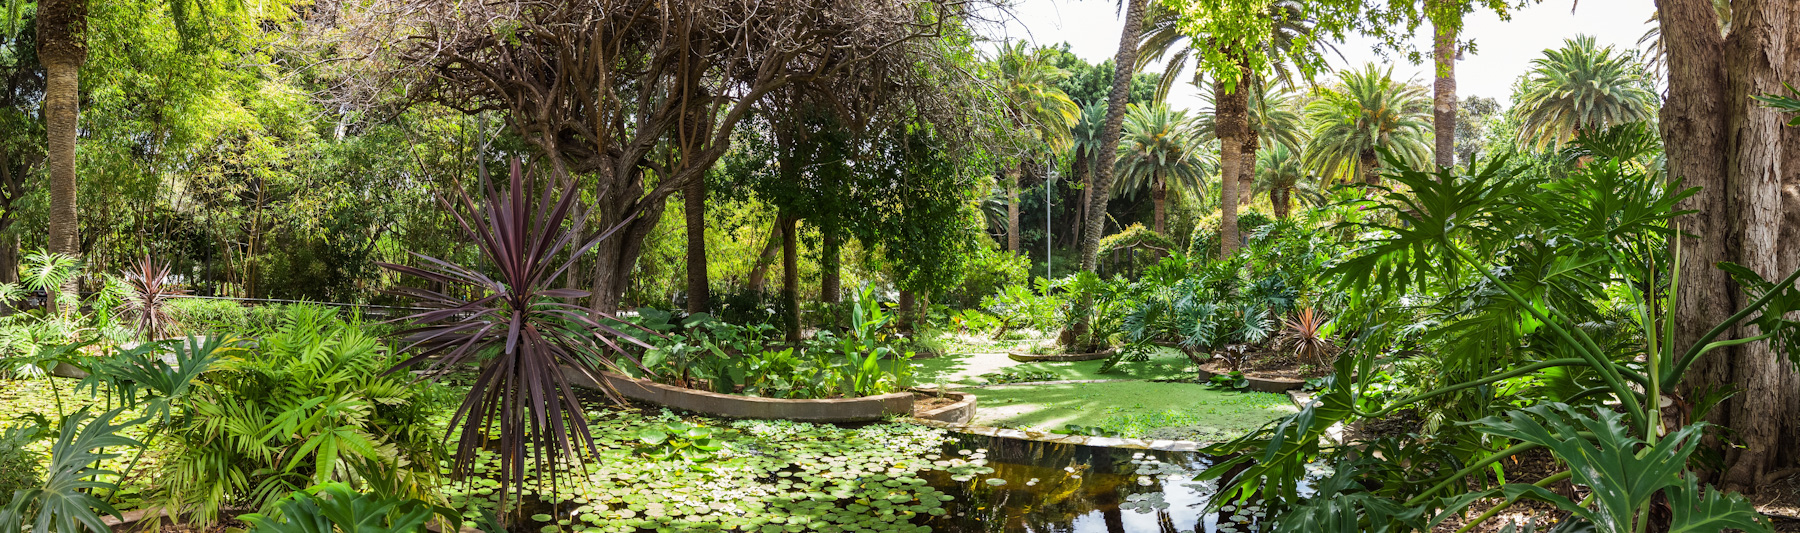 Jardín Botánico 2021 - Horario, Precio Y Ubicación | Tenerife destiné Jardín Botánico Tenerife